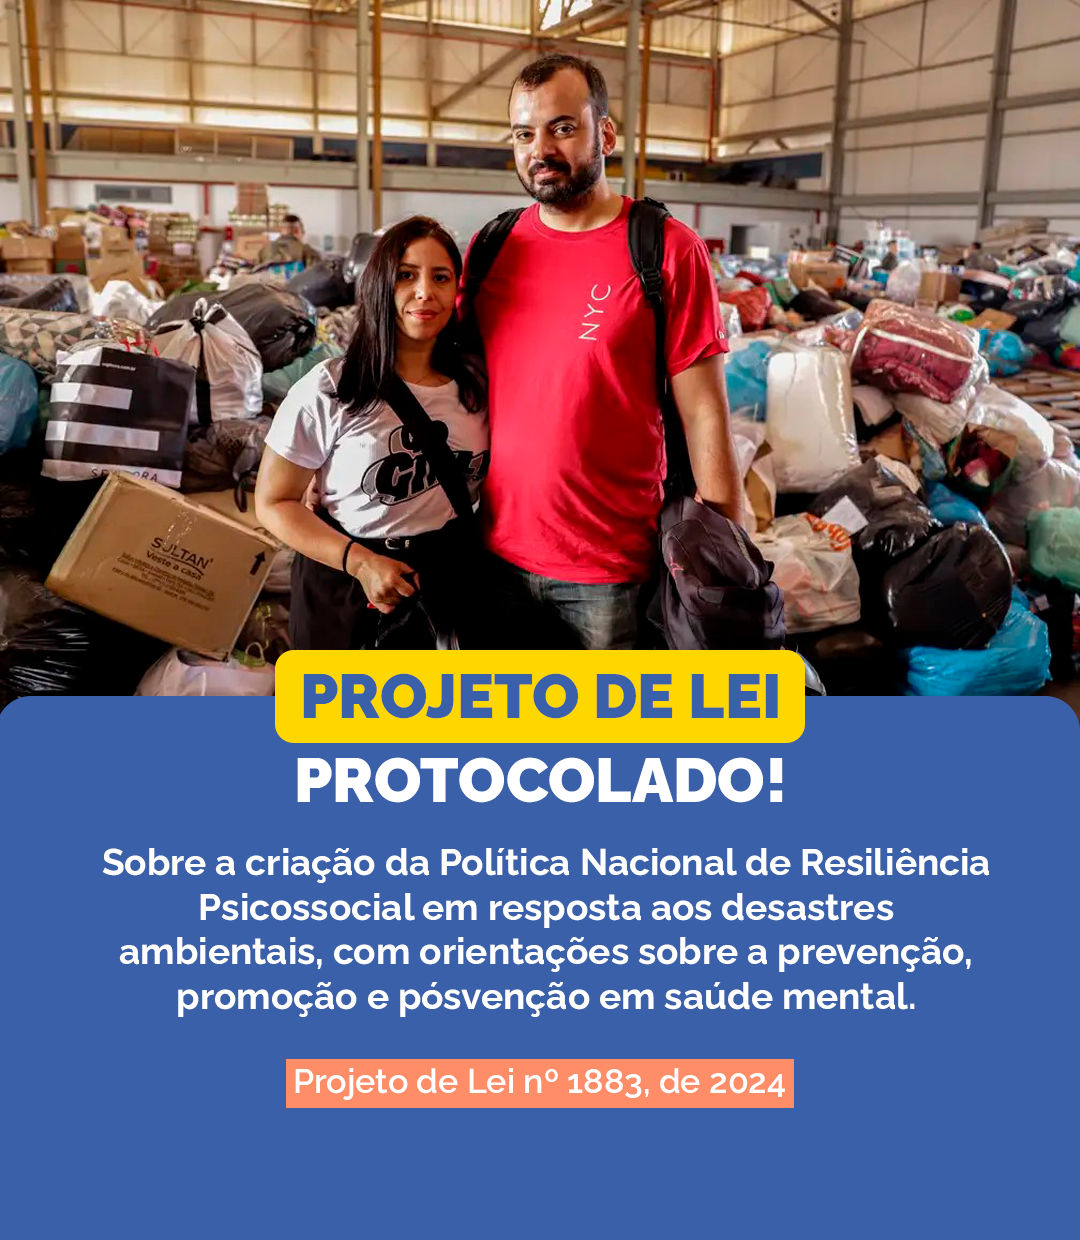 Frente Parlamentar da Saúde Mental protocola PL da Política Nacional de Resiliência Psicossocial em resposta aos desastres ambientais no Brasil